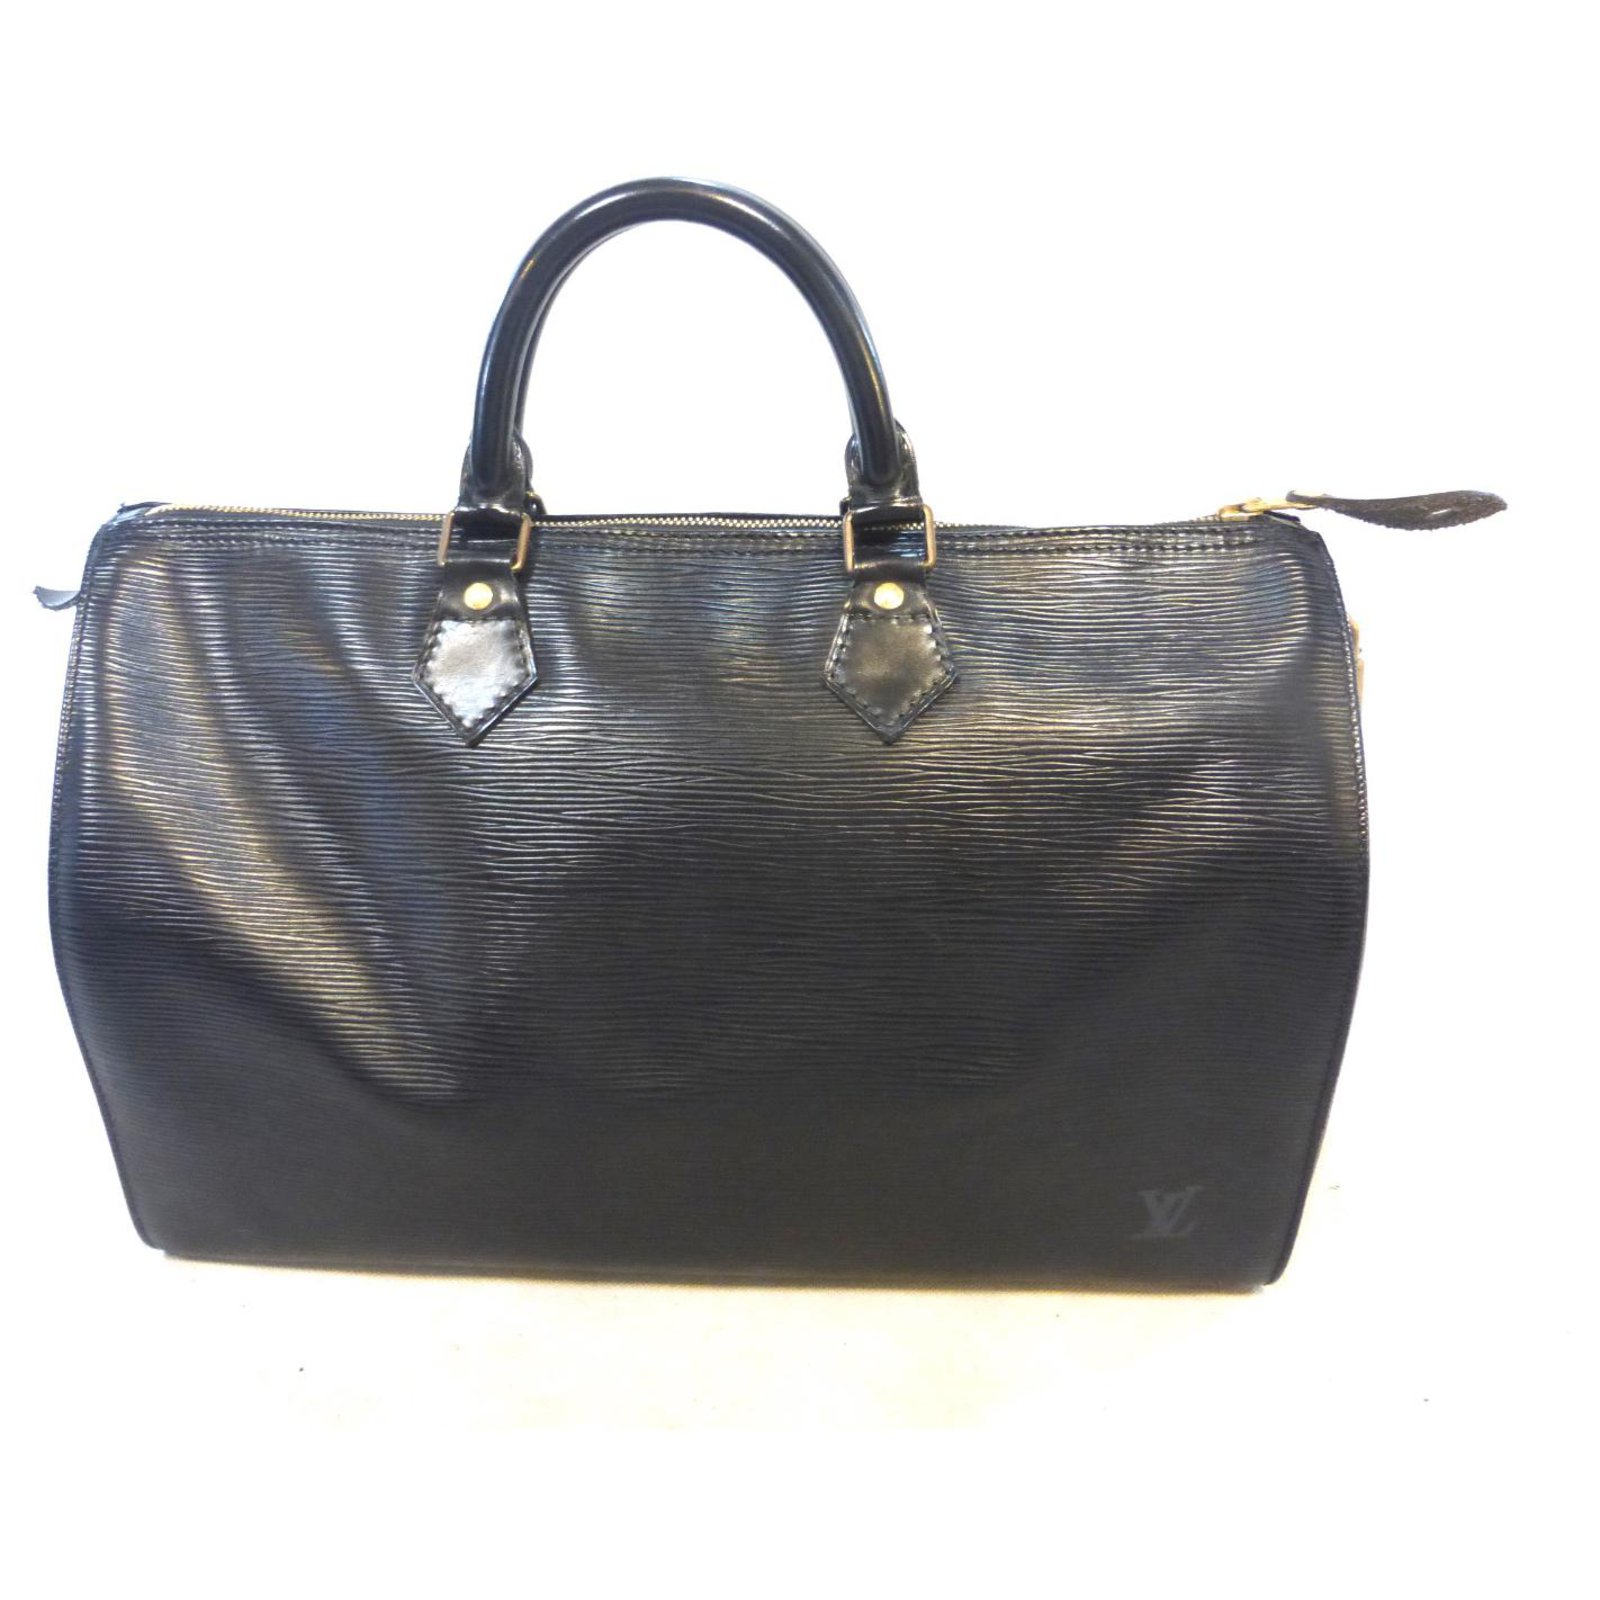 Louis Vuitton, Bags, Louis Vuitton Speedy 35 Black Epi Leather Stunning